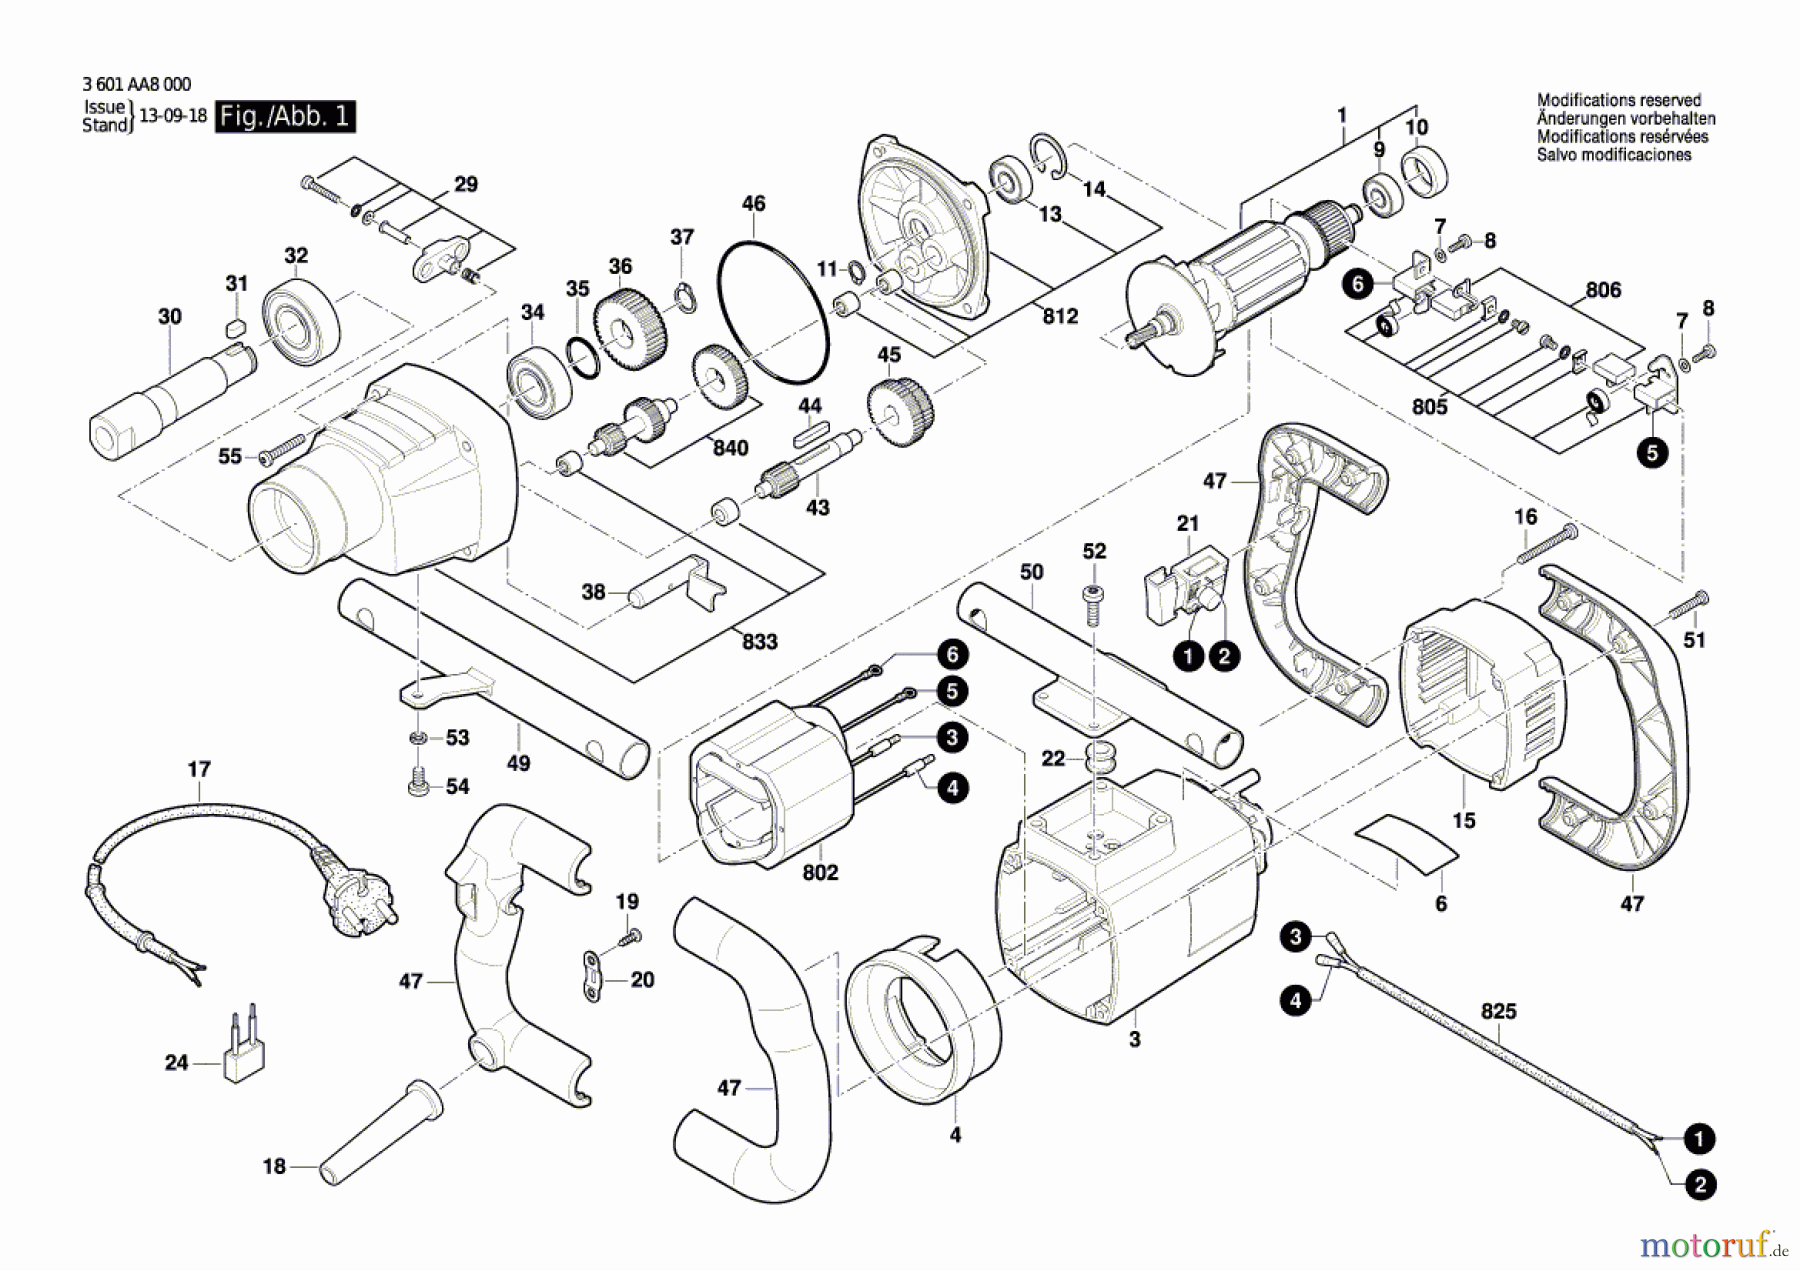  Bosch Werkzeug Rührwerk GRW 18-2 E Seite 1